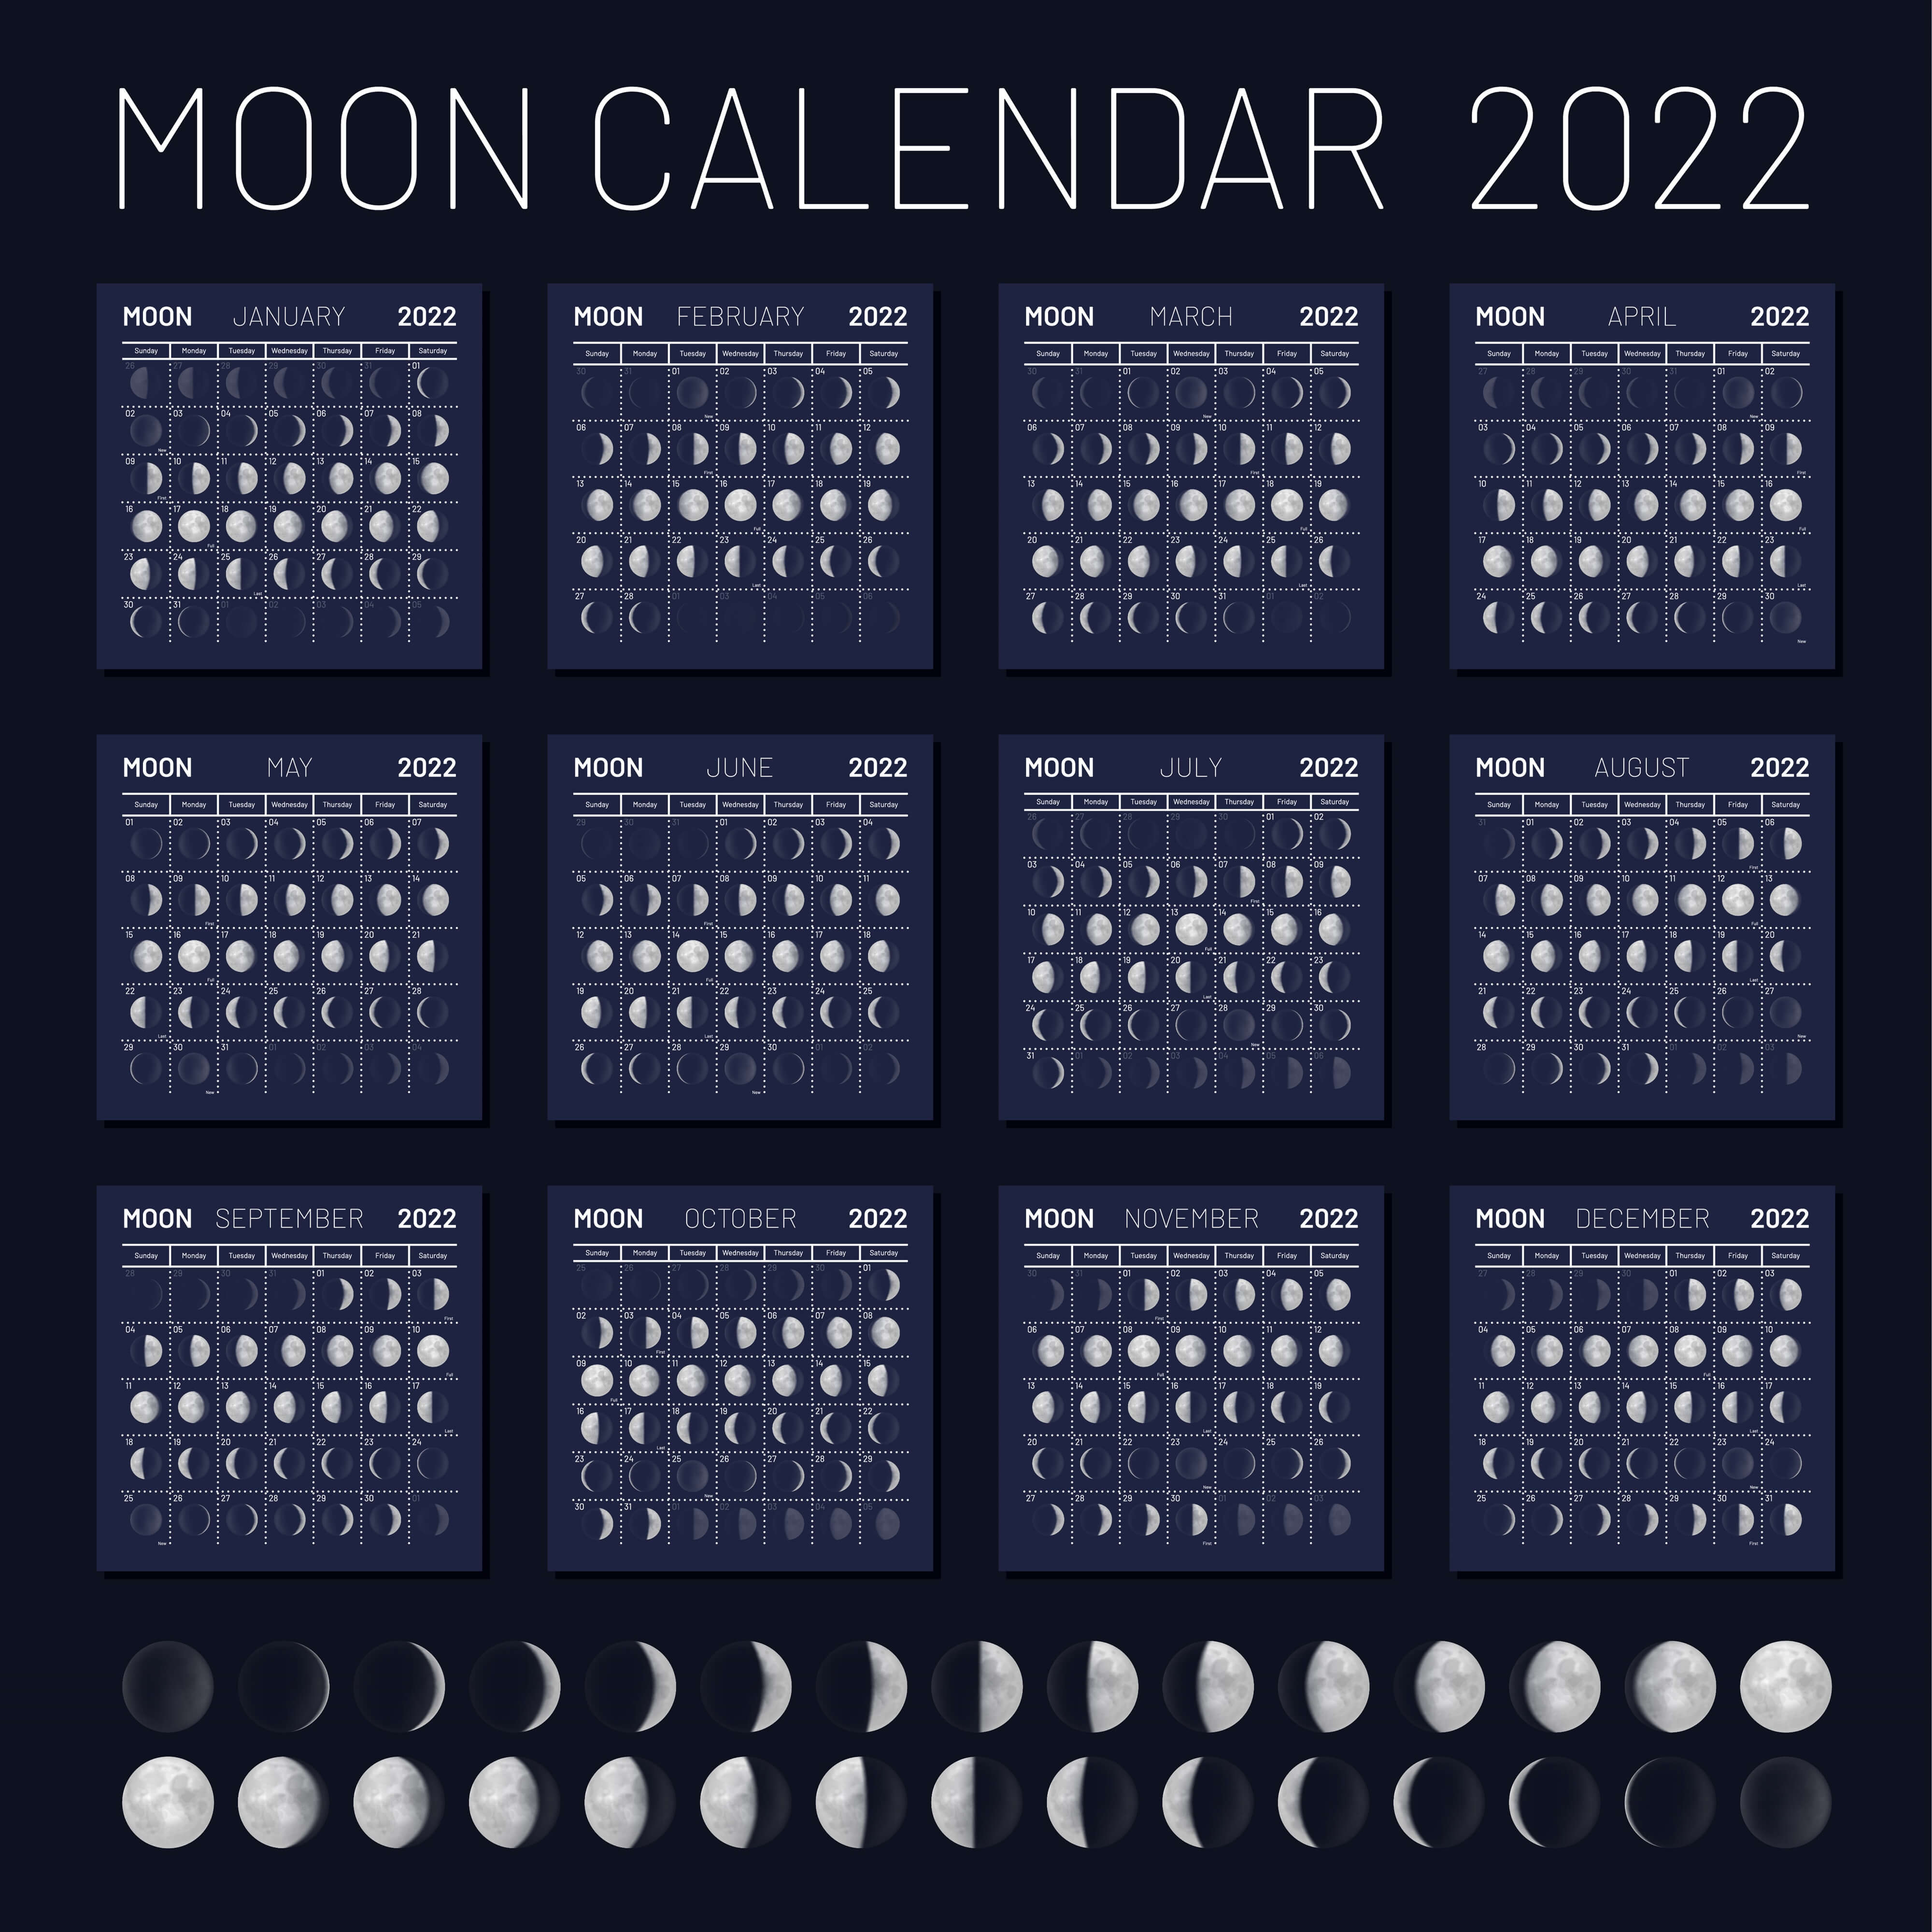 Календарь фаз луны на апрель 2024 года. Moon phases Lunar Calendar 2022 год. Календарь 2022 Луны лунный. Moon Calendar 2022 Lunar Calendar 2022. Календарь фаз Луны на 2022 год по месяцам.